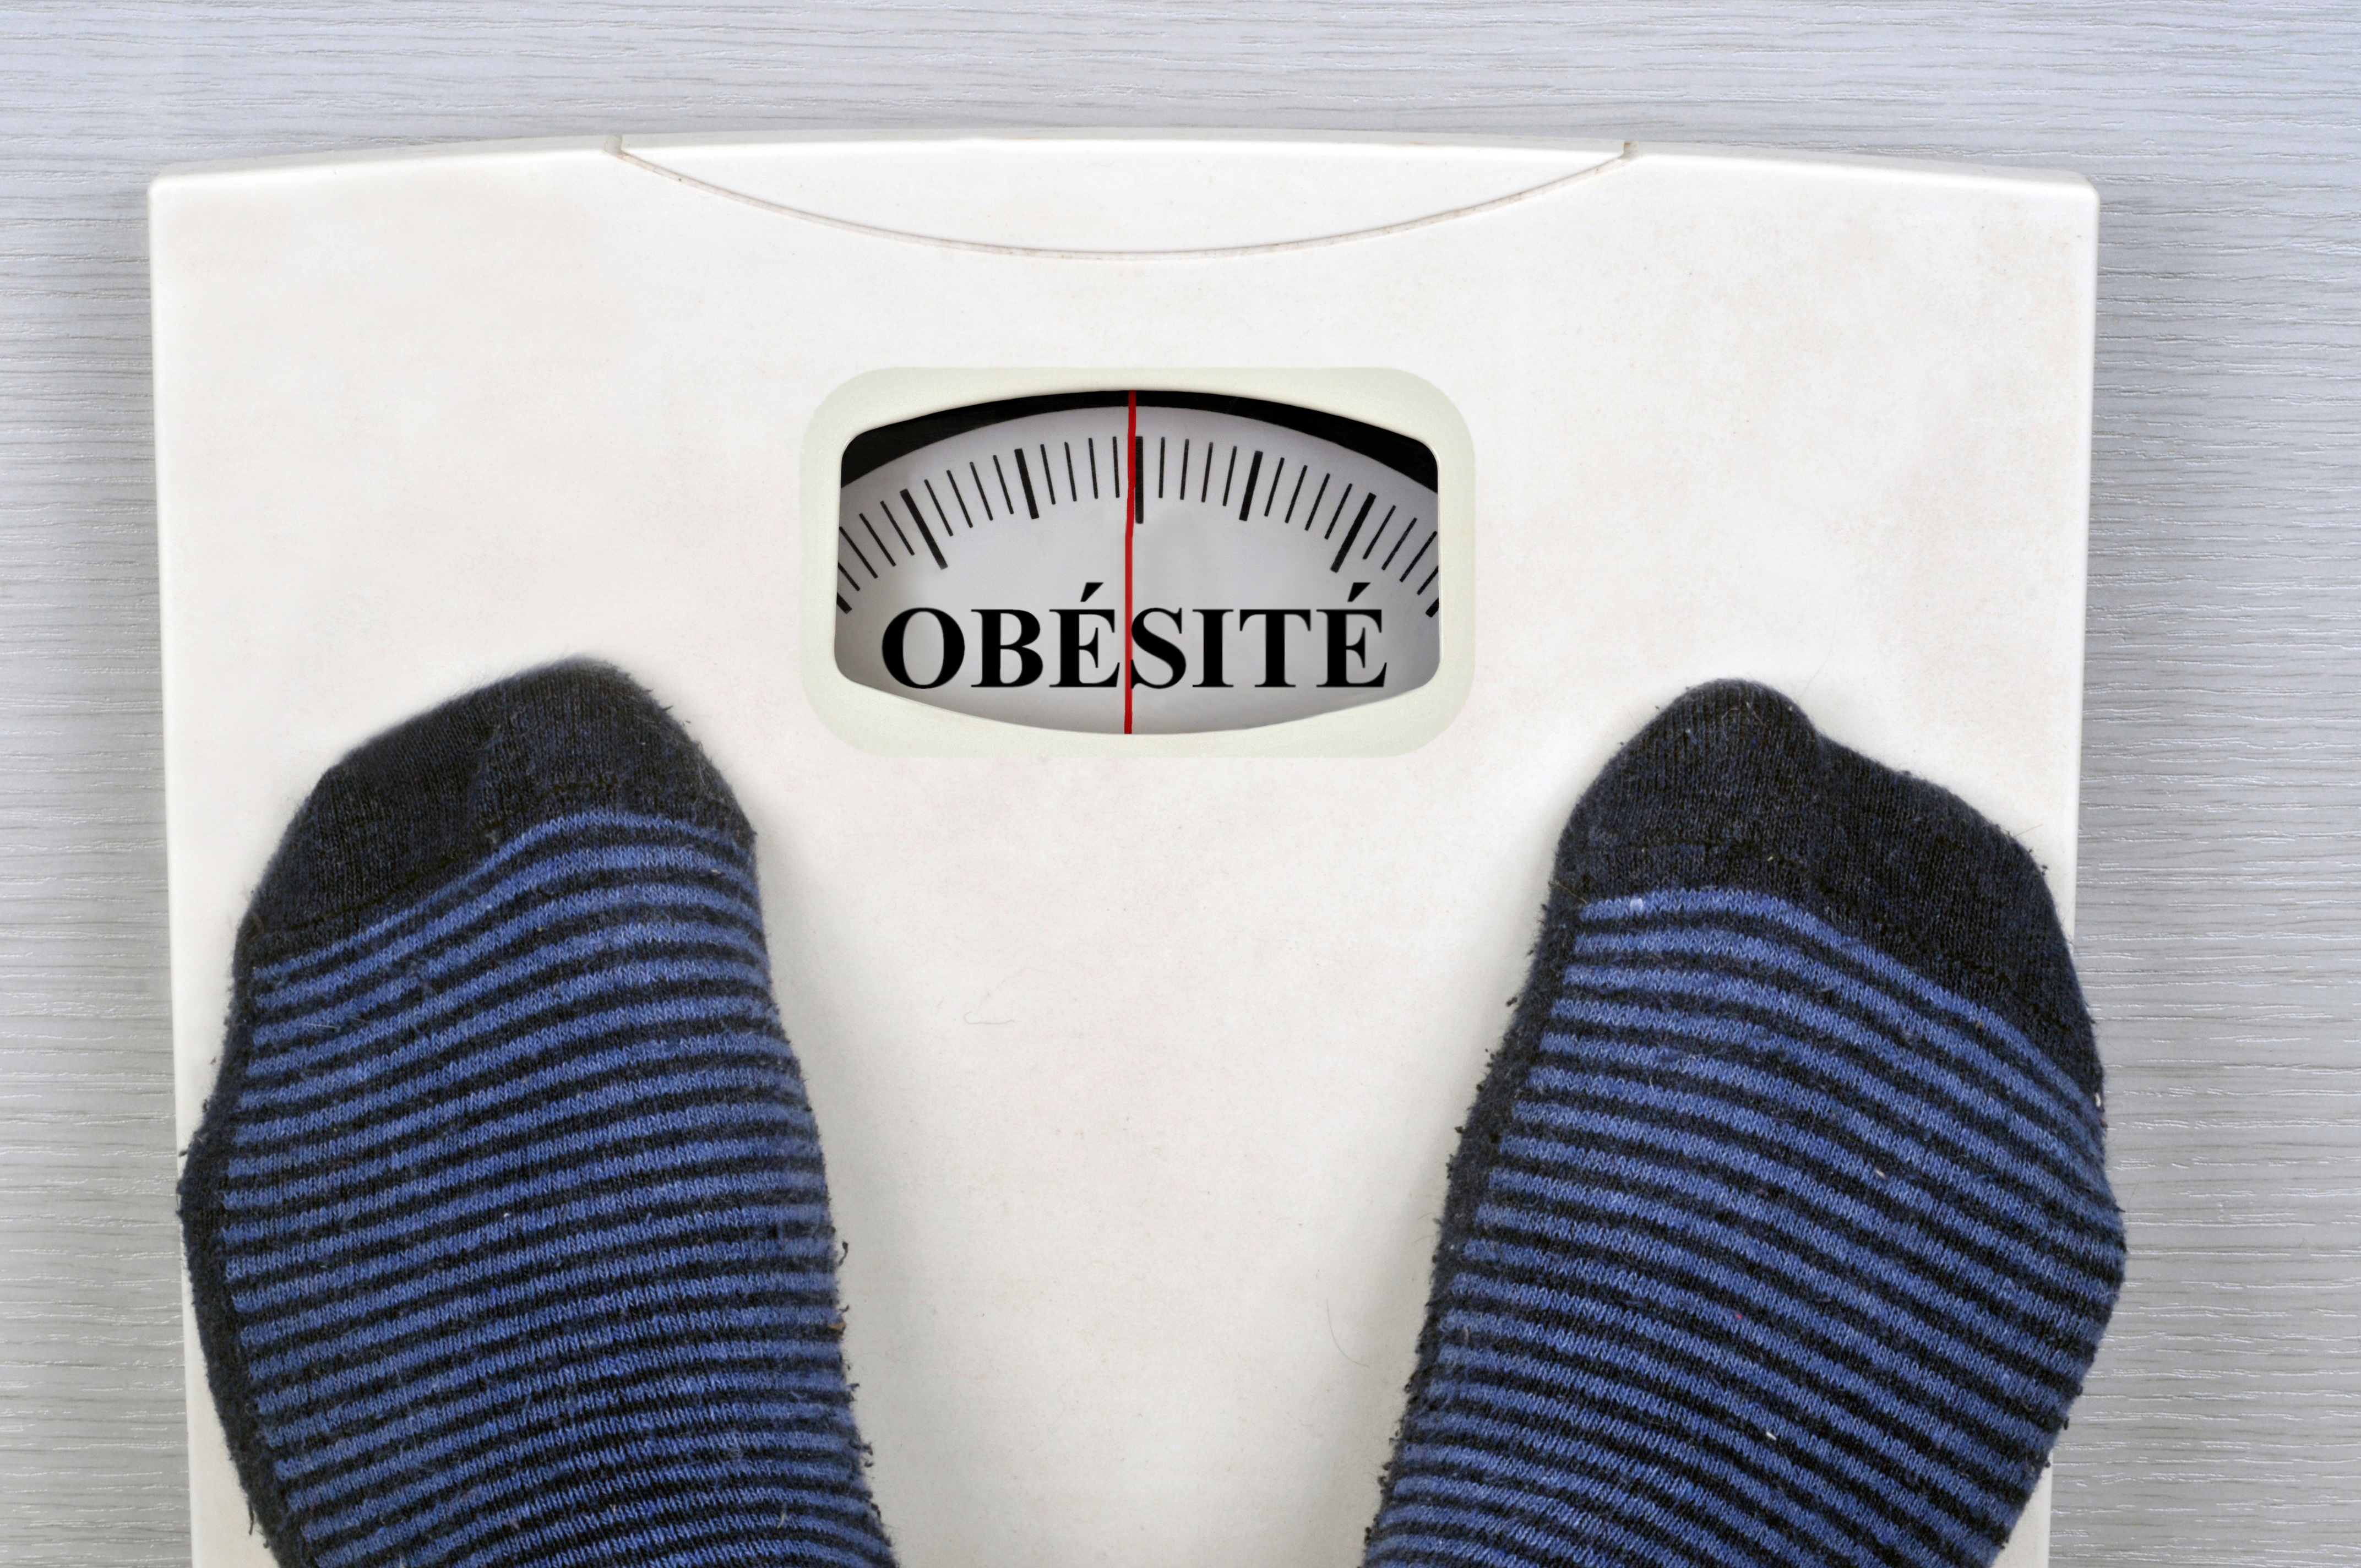 L’obésité, facteur de risque de développer une forme sévère du Covid-19 ?